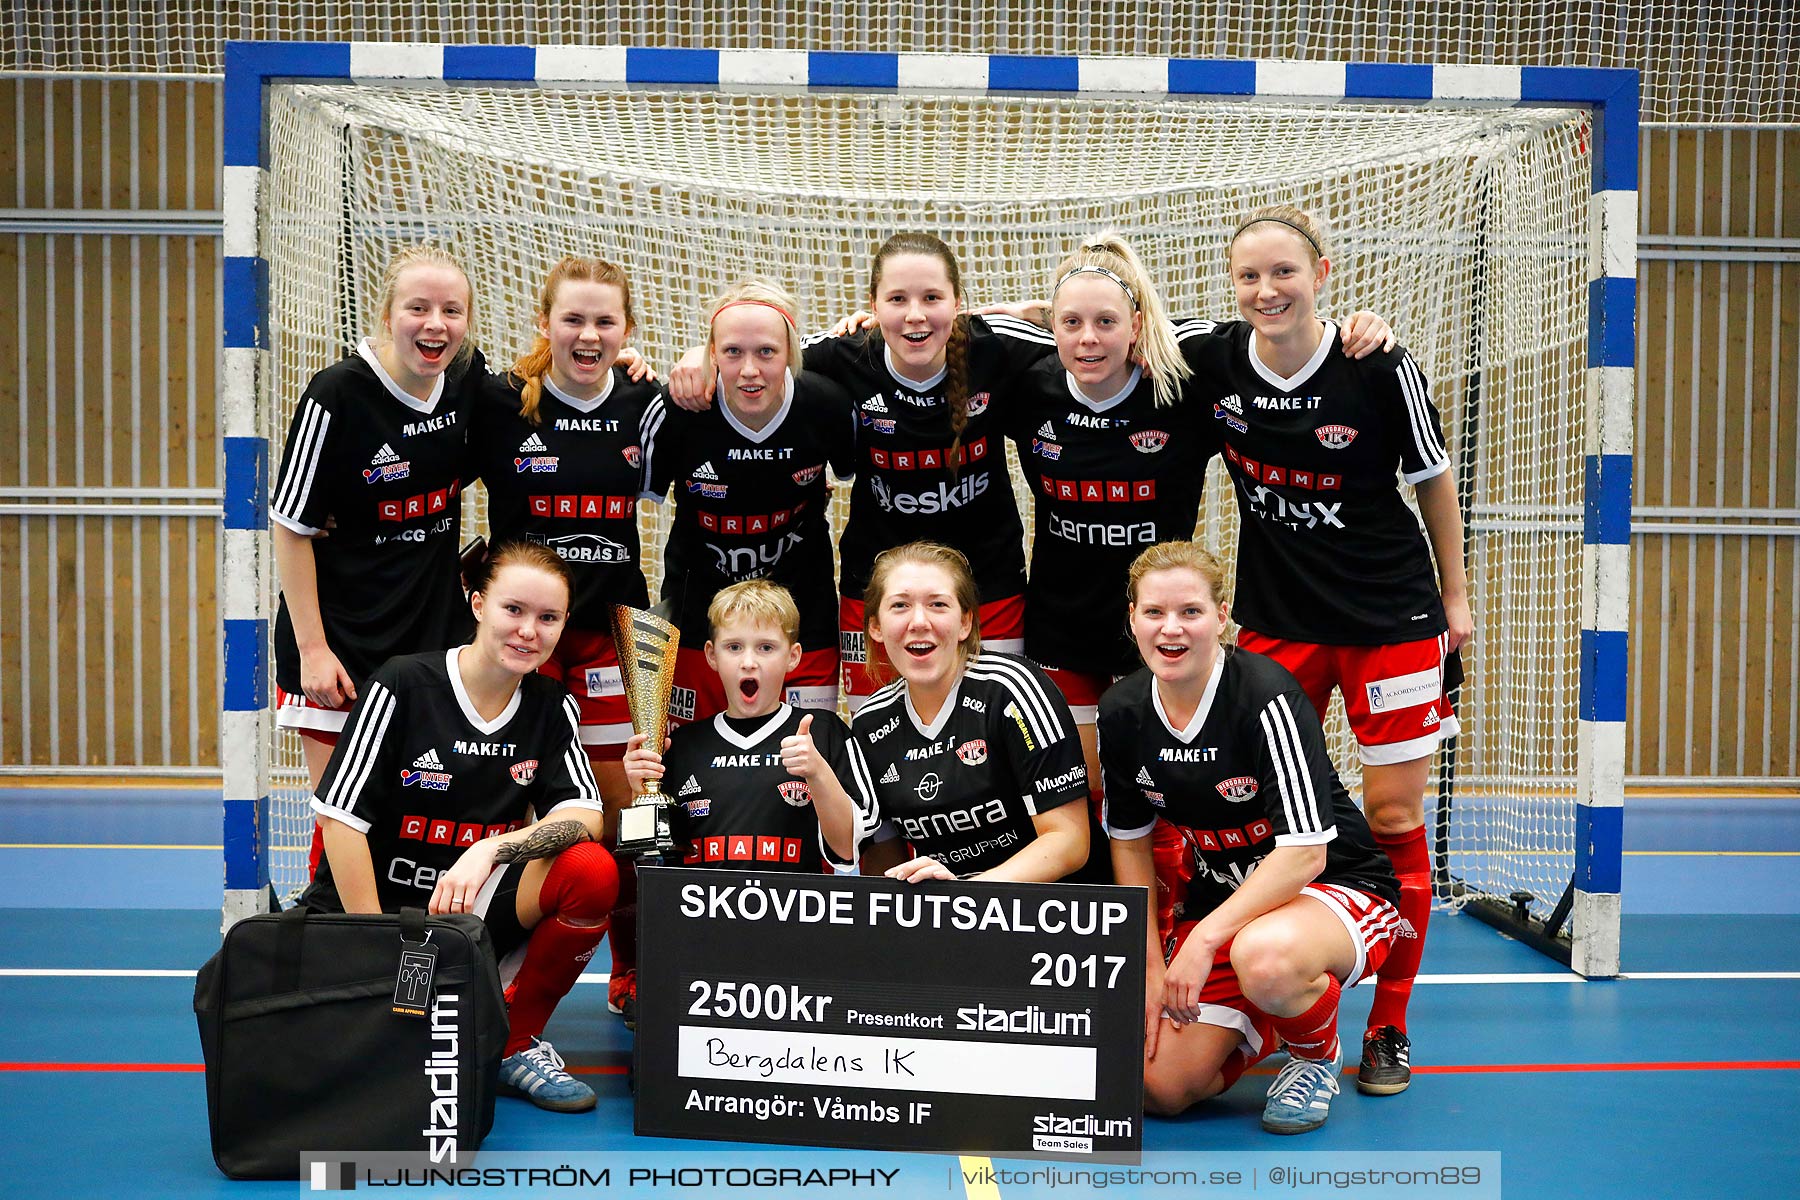 Skövde Futsalcup 2017 Qviding FIF IFK Skövde FK Skövde KIK Falköping FC Våmbs IF,mix,Arena Skövde,Skövde,Sverige,Futsal,,2017,192846